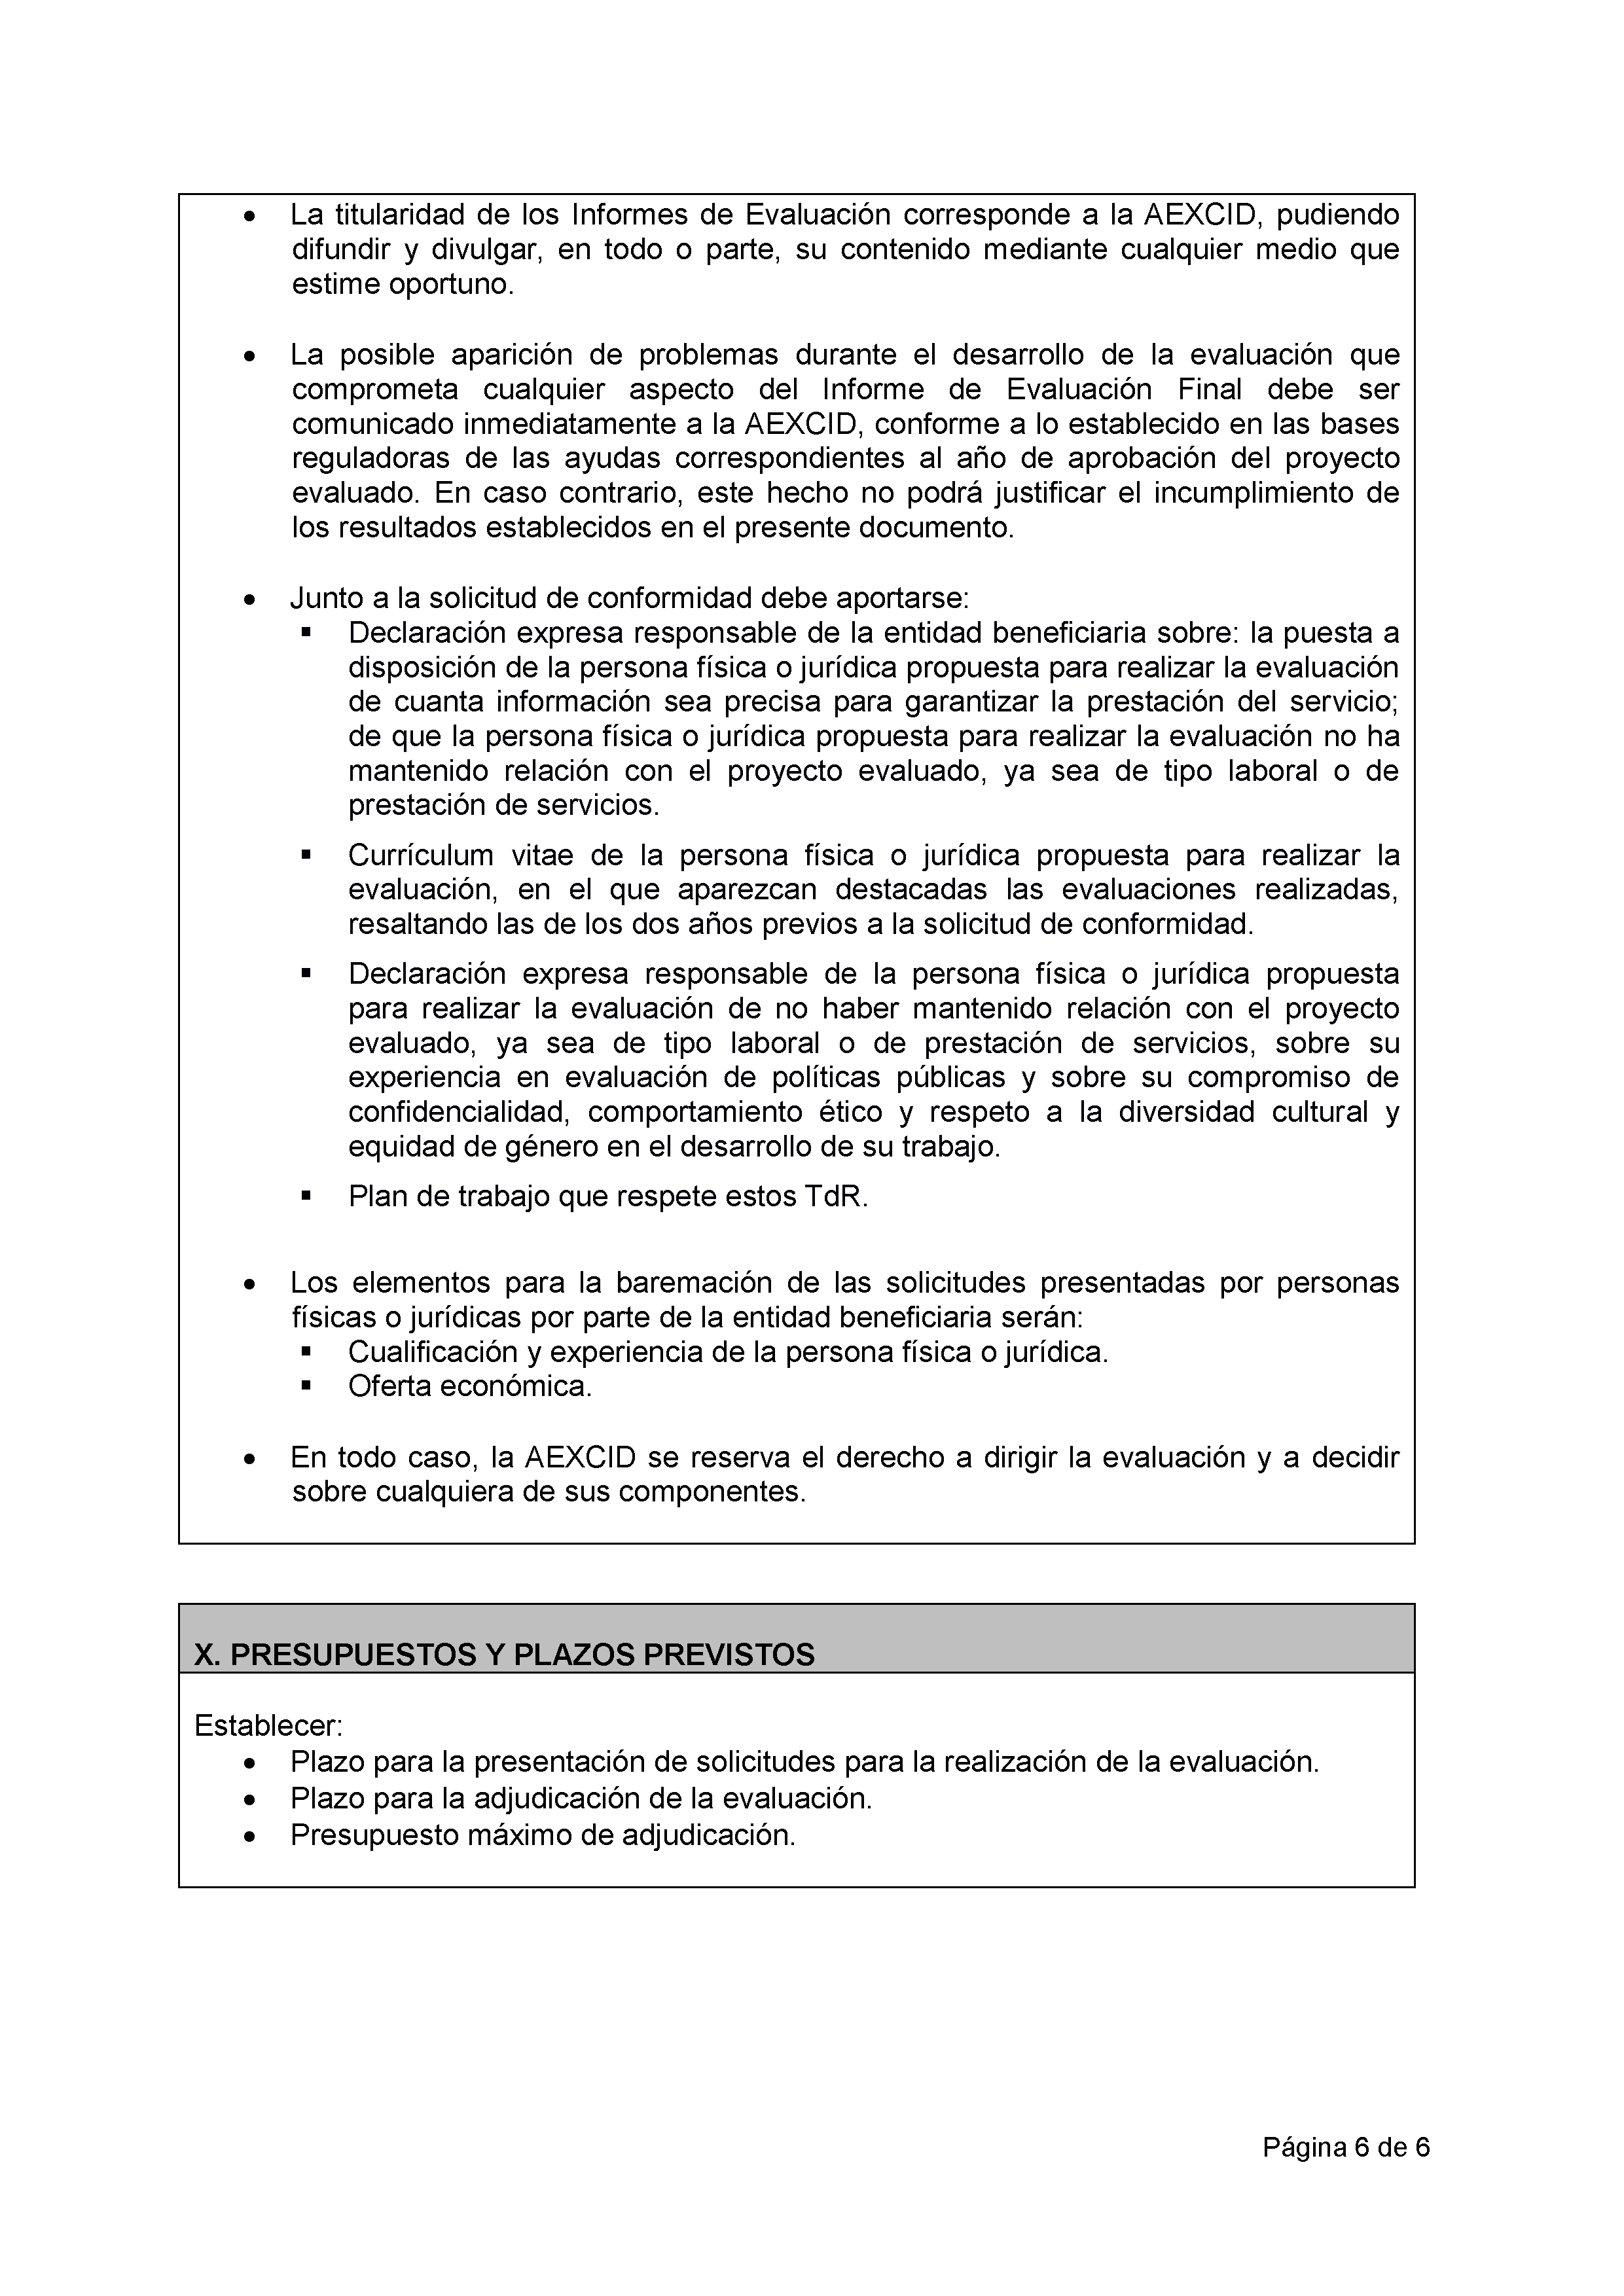 ANEXO VIII MODELO DE ESTRUCTURA PARA TÉRMINOS DE REFERENCIA PARA EVALUACIONES FINALES PAG.6